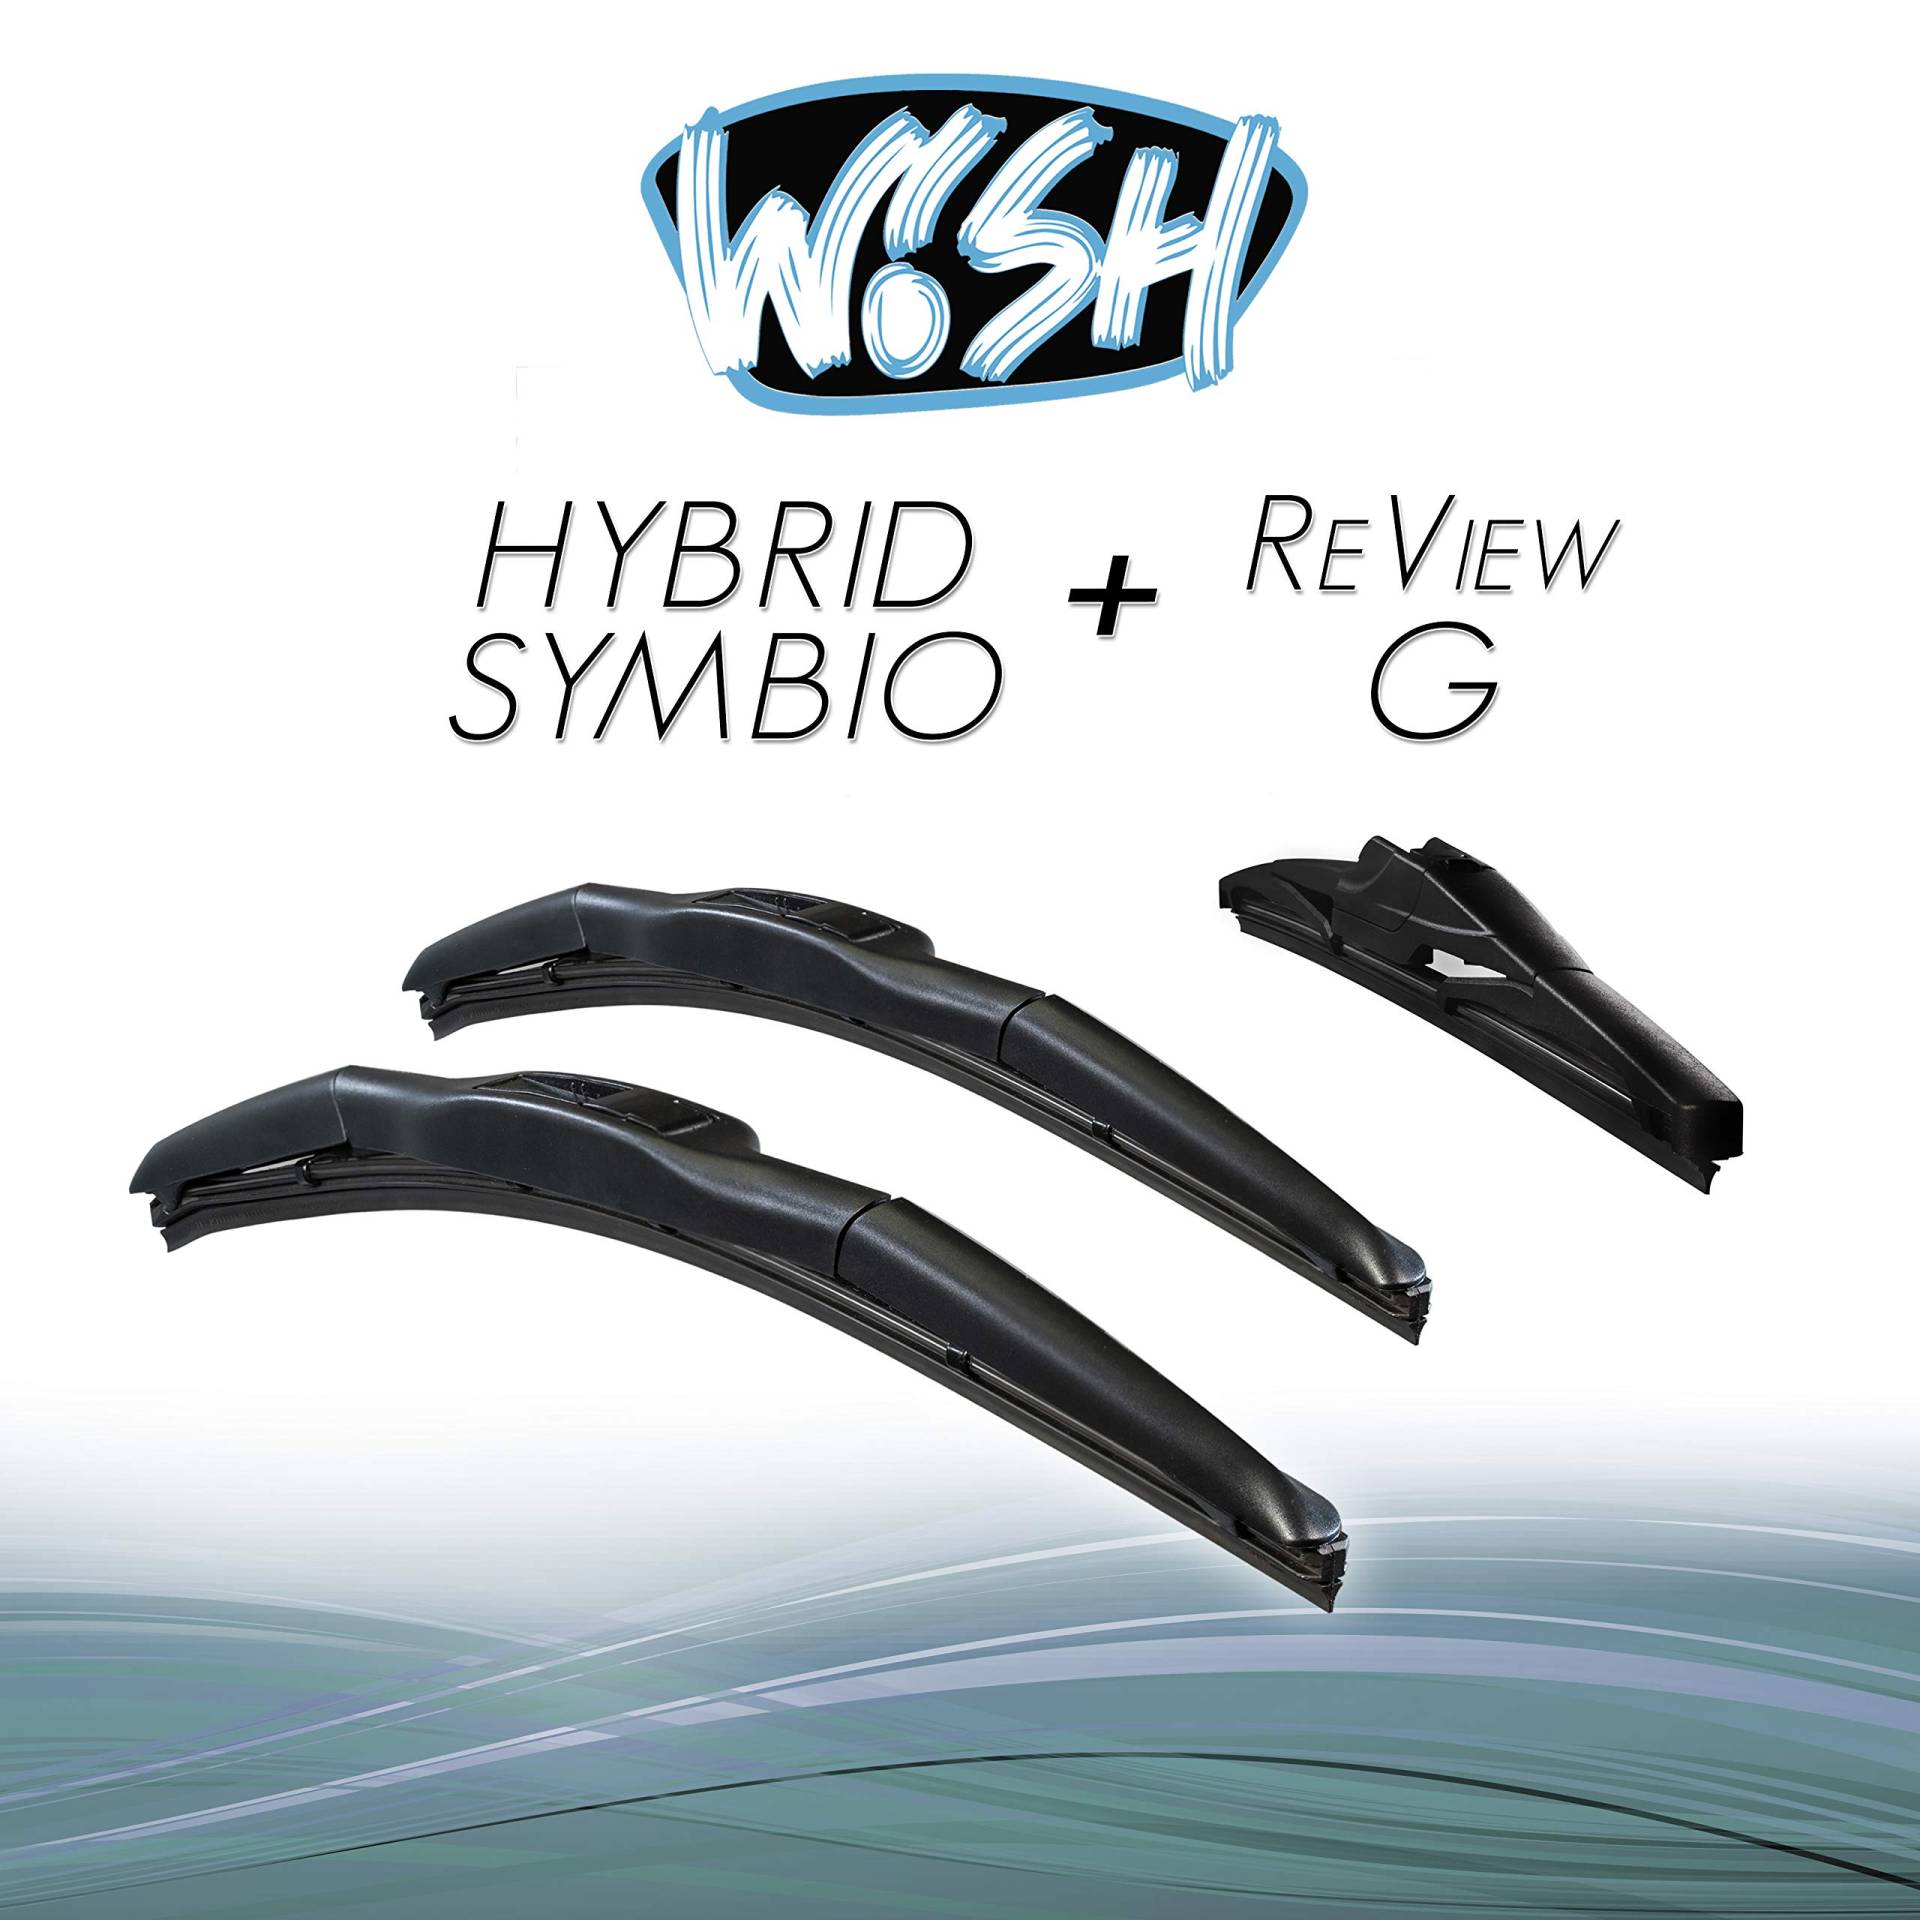 Wish® Hybrid Symbio Satz Front + Heck Scheibenwischer Länge: 19" 480mm / 19" 480mm / 11" 280mm Wischblätter Vorne und Hinten Hybrid-Scheibenwischer + Review G HS19.19.RG11 von Wish